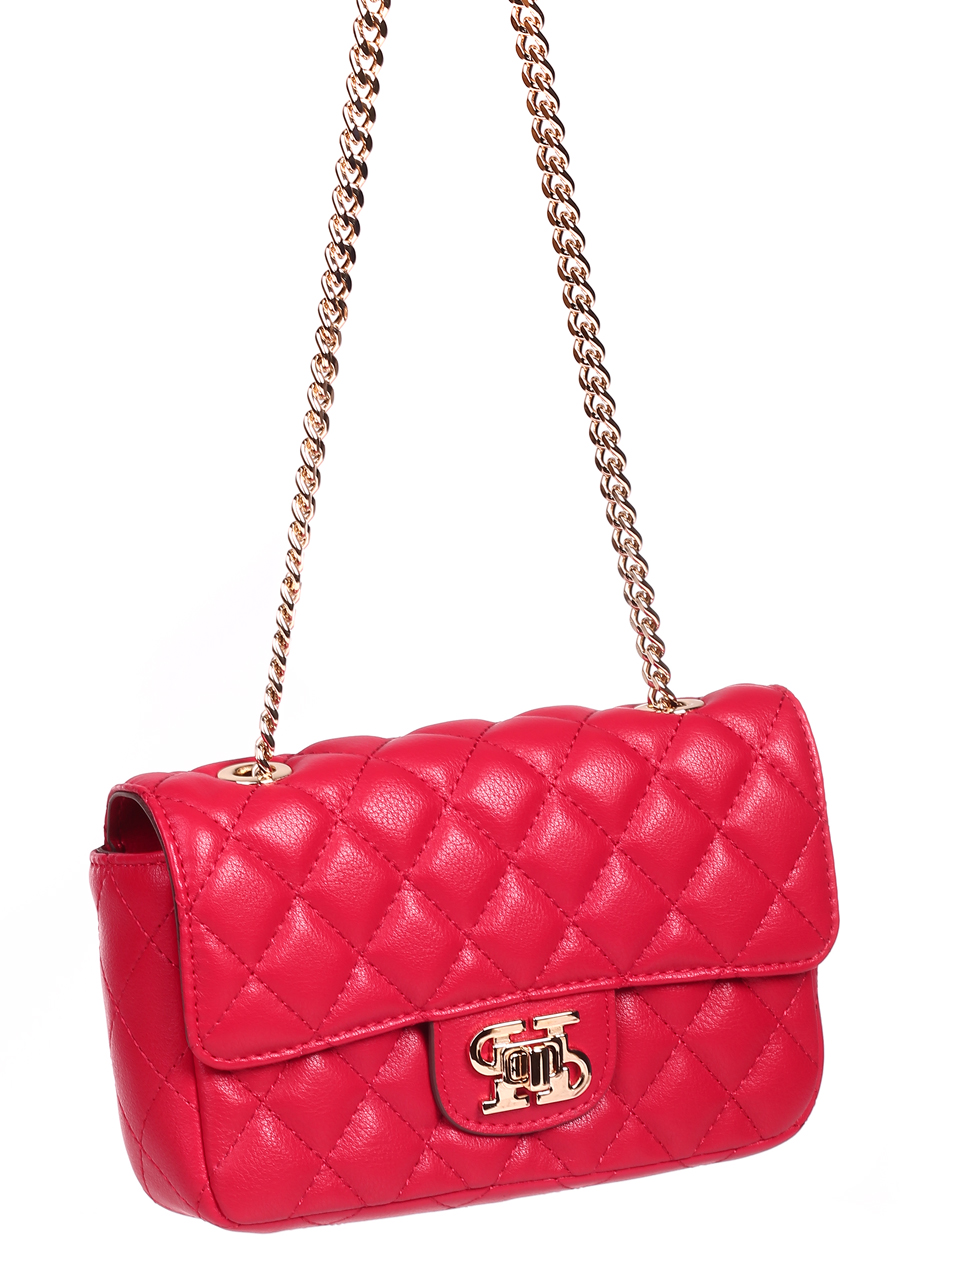 Елегантна дамска чанта в червено от естествена кожа JT21048 red